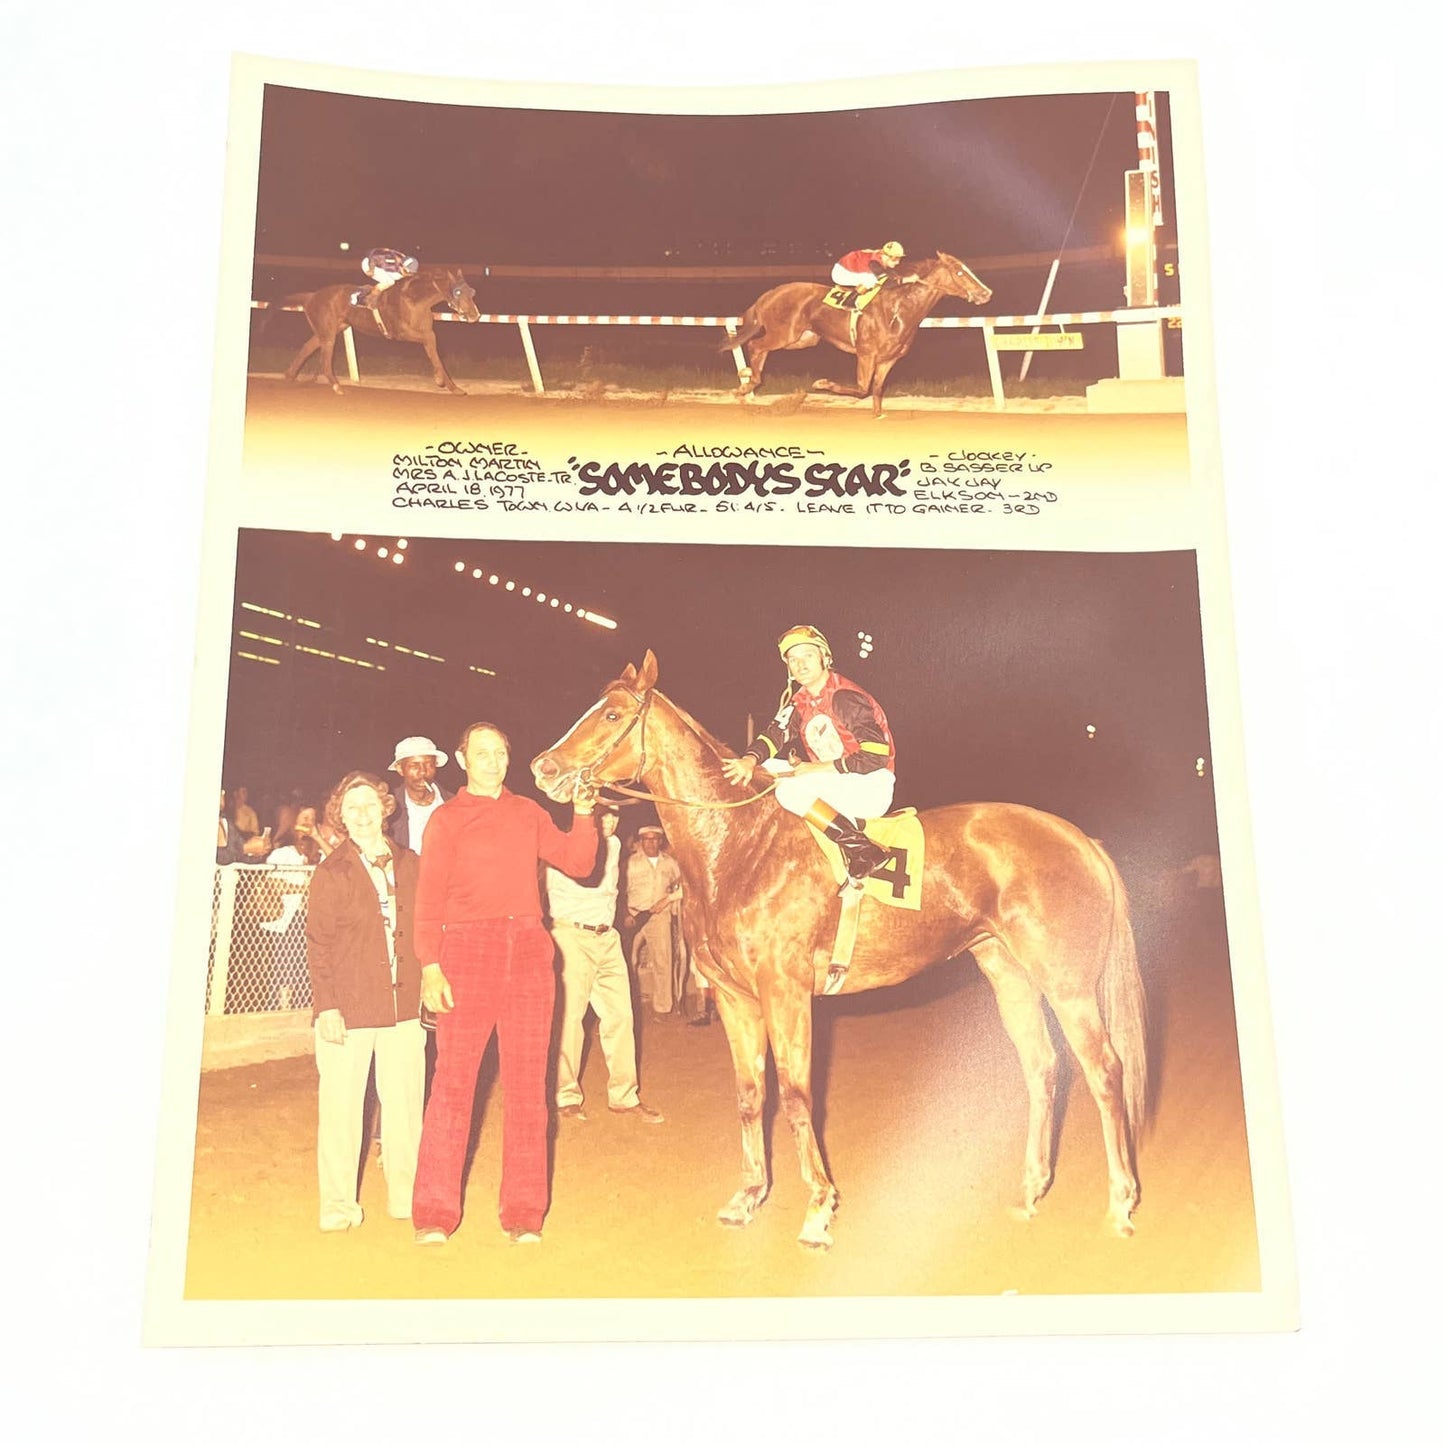 1977 Original Horse Race Winner Photo "Somebody's Star" Charles Town W VA AC5